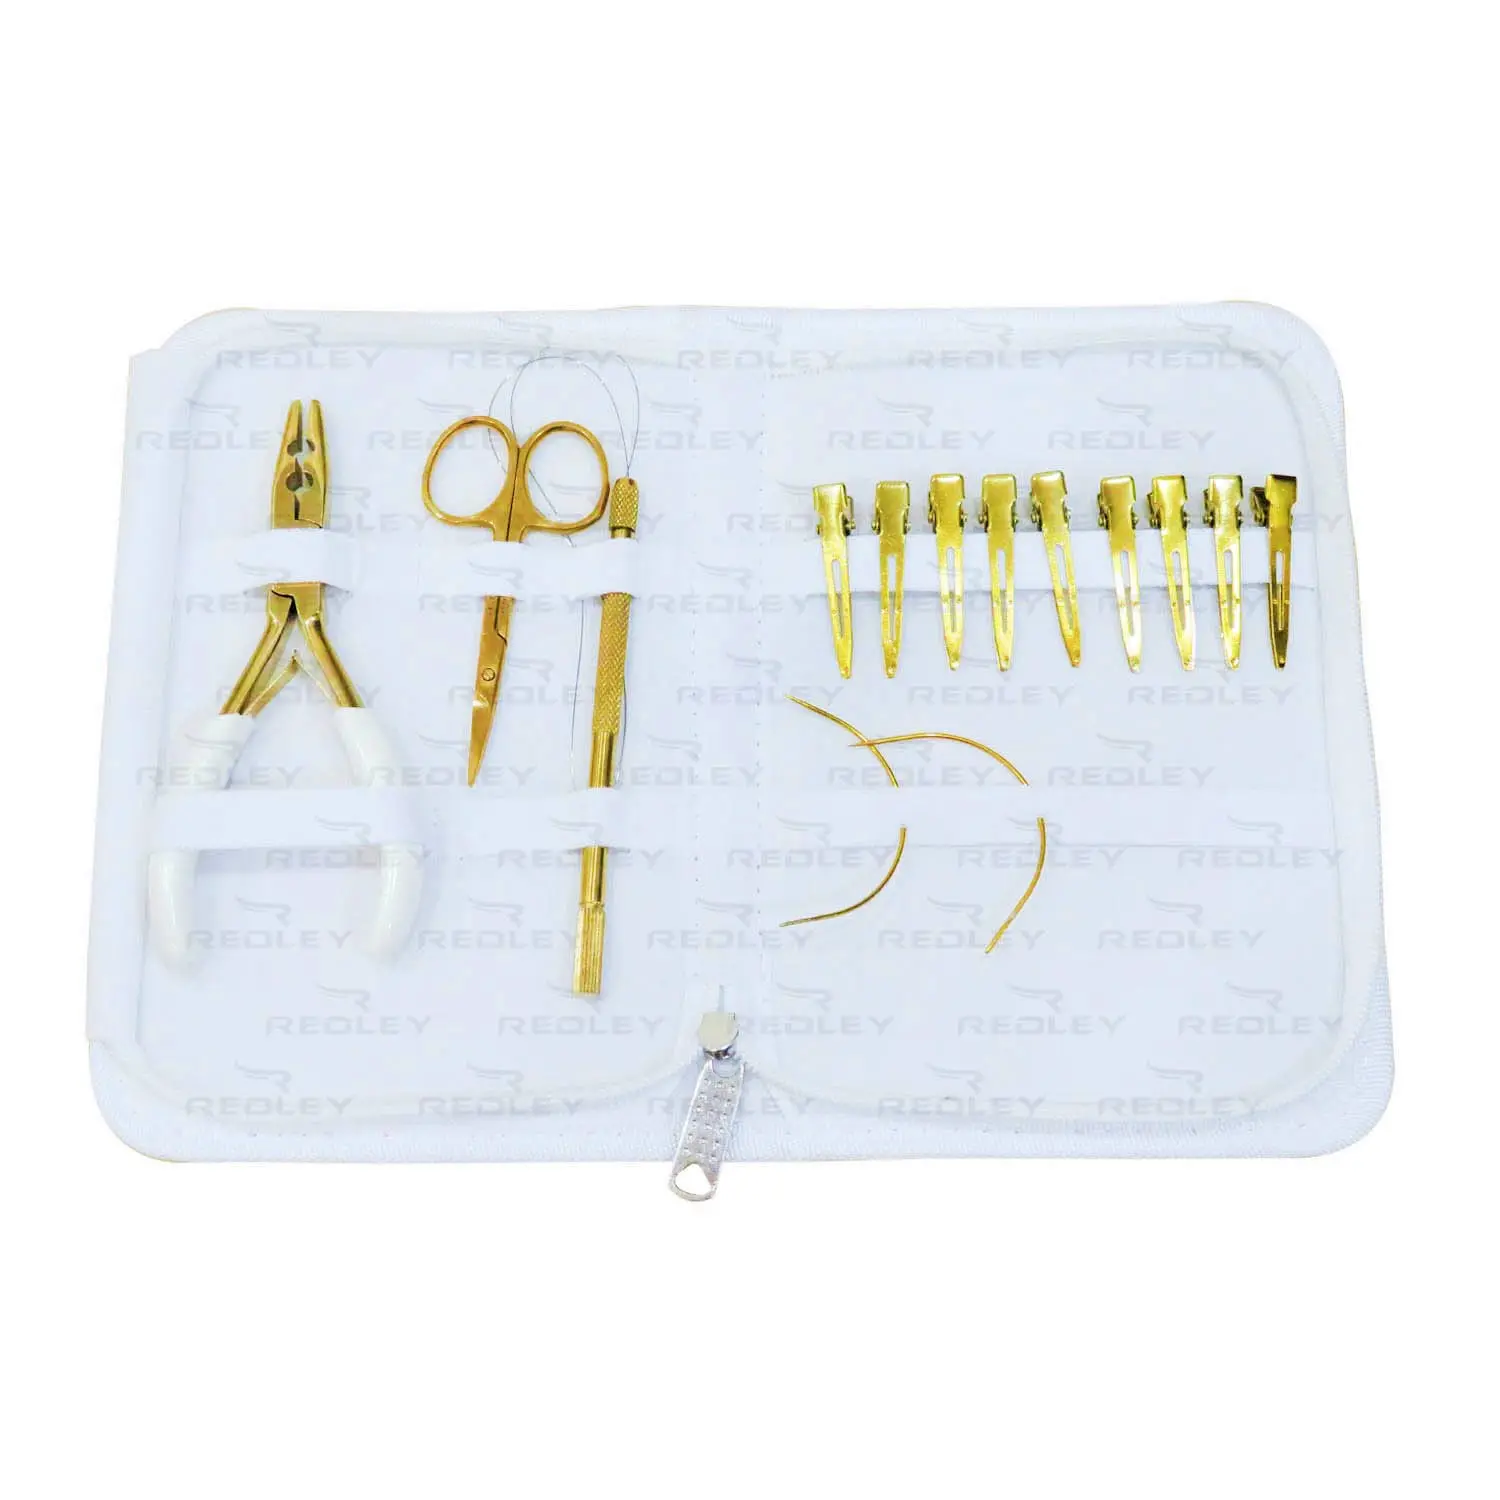 Haarverlängerungswerkzeug-Kit mit goldenen Werkzeugen Farbe Inklusive Zange Haars chere Schleifen nadel und Clips Am besten für Friseure